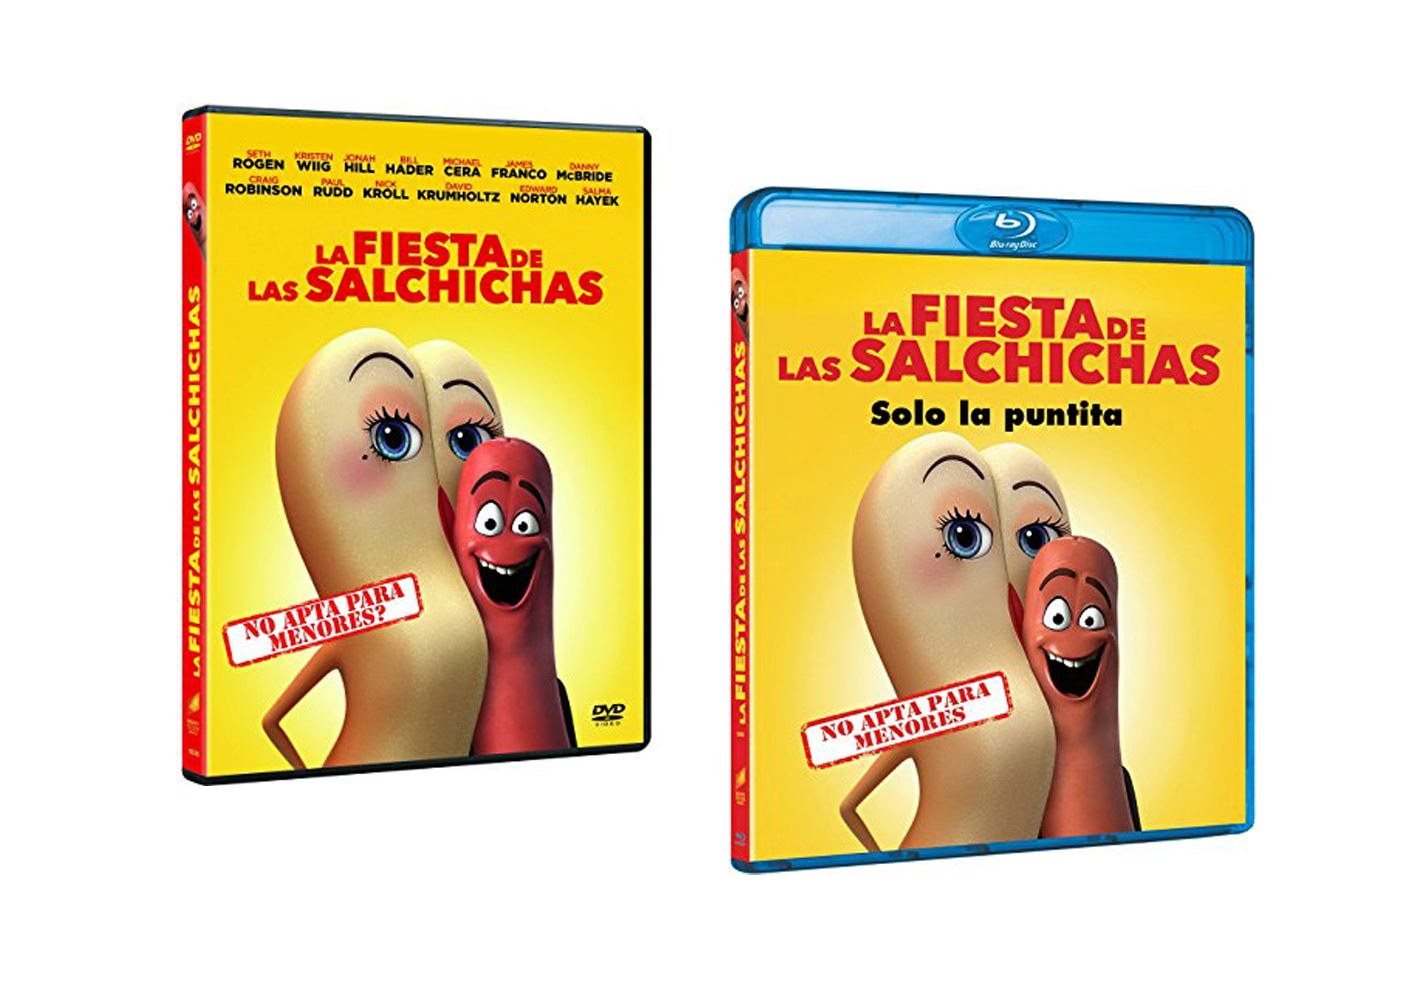 La película de animación más irreverente jamás producida, ya disponible en DVD y Blu-ray